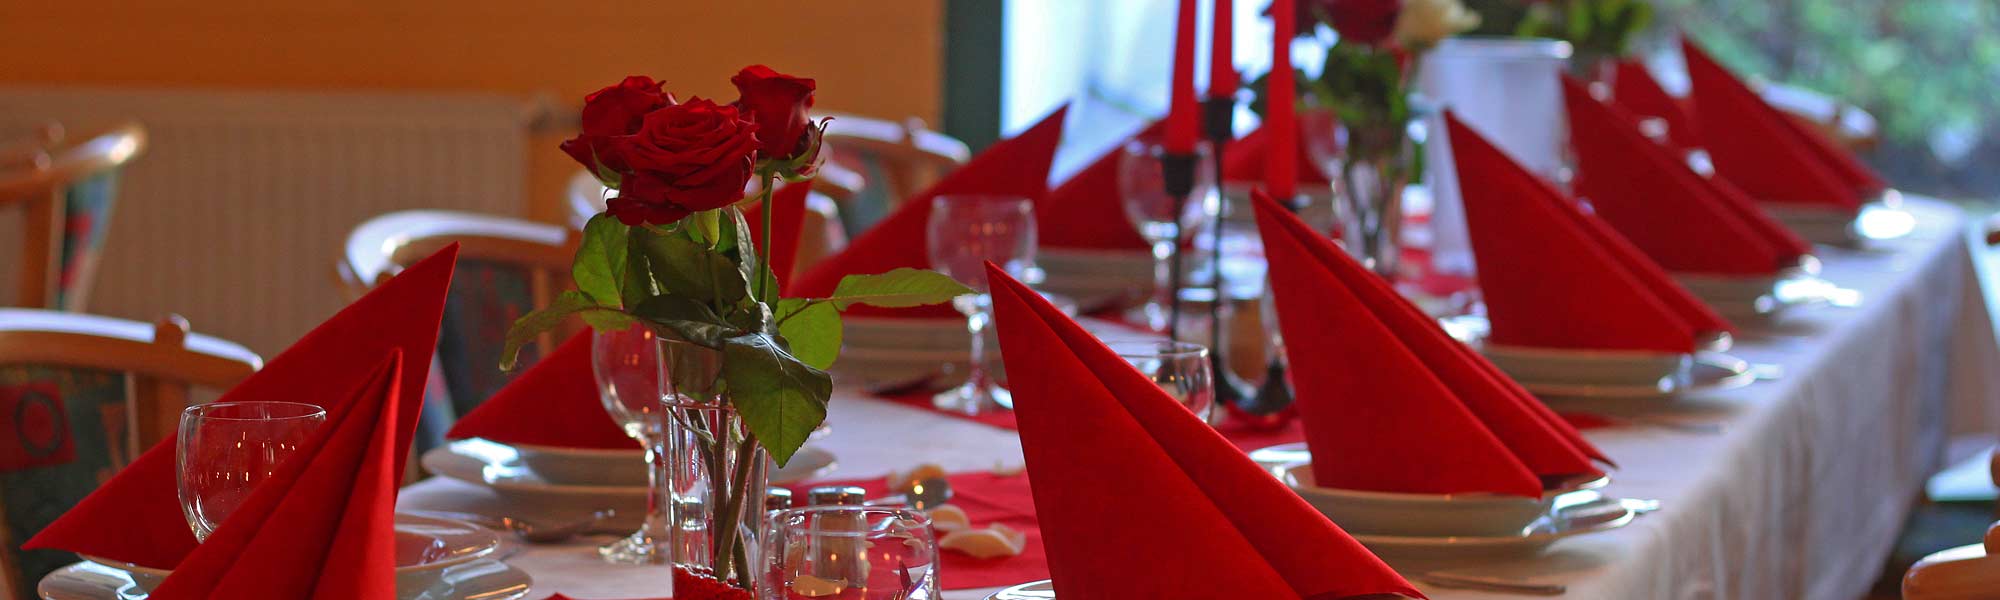 eingedeckter Tisch mit roten Rosen und Servietten